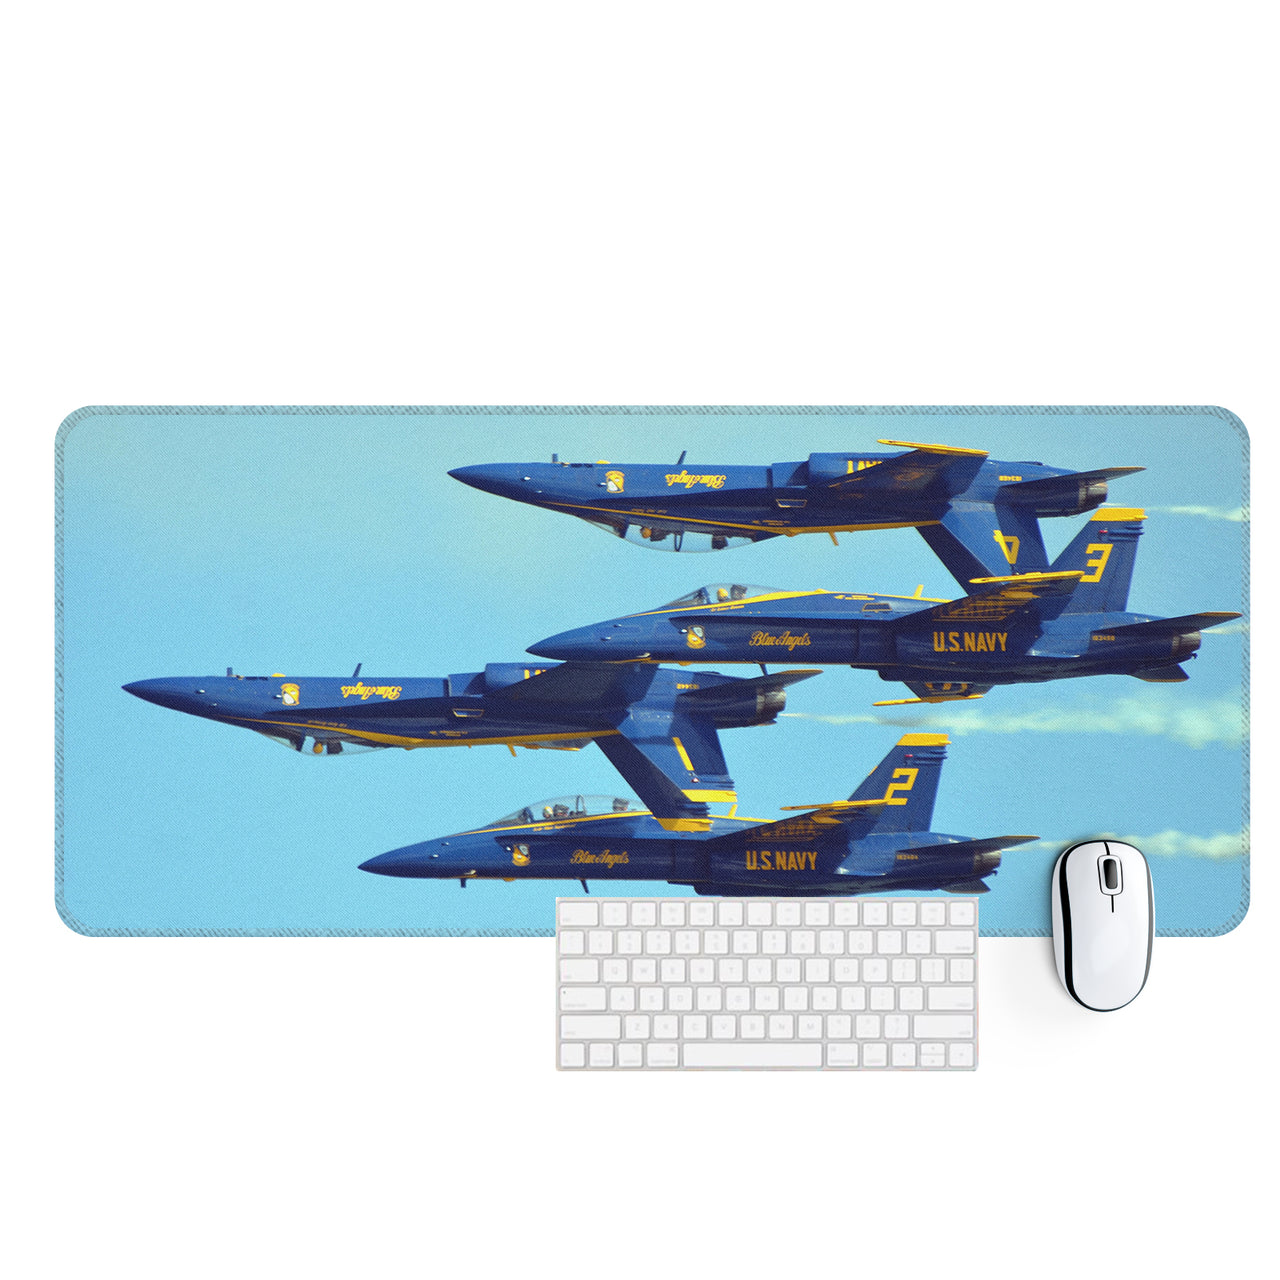 US Navy Blue Angels Designed Desk Mats